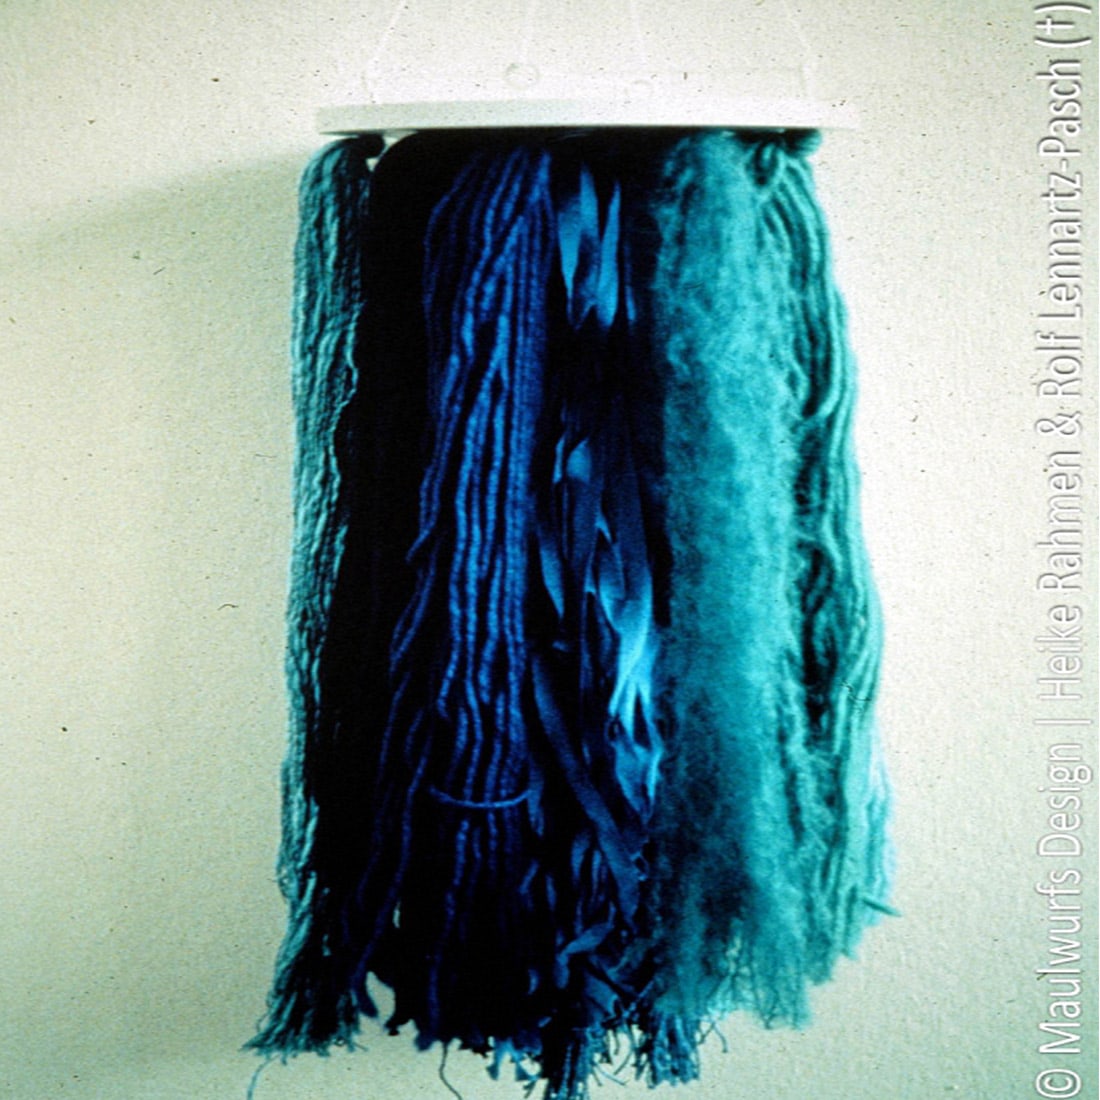 Ein an der Wand montiertes Textilkunstwerk mit langen Garnsträngen in Blautönen, dargestellt in einem Farbverlauf von Hell- zu Dunkelblau.